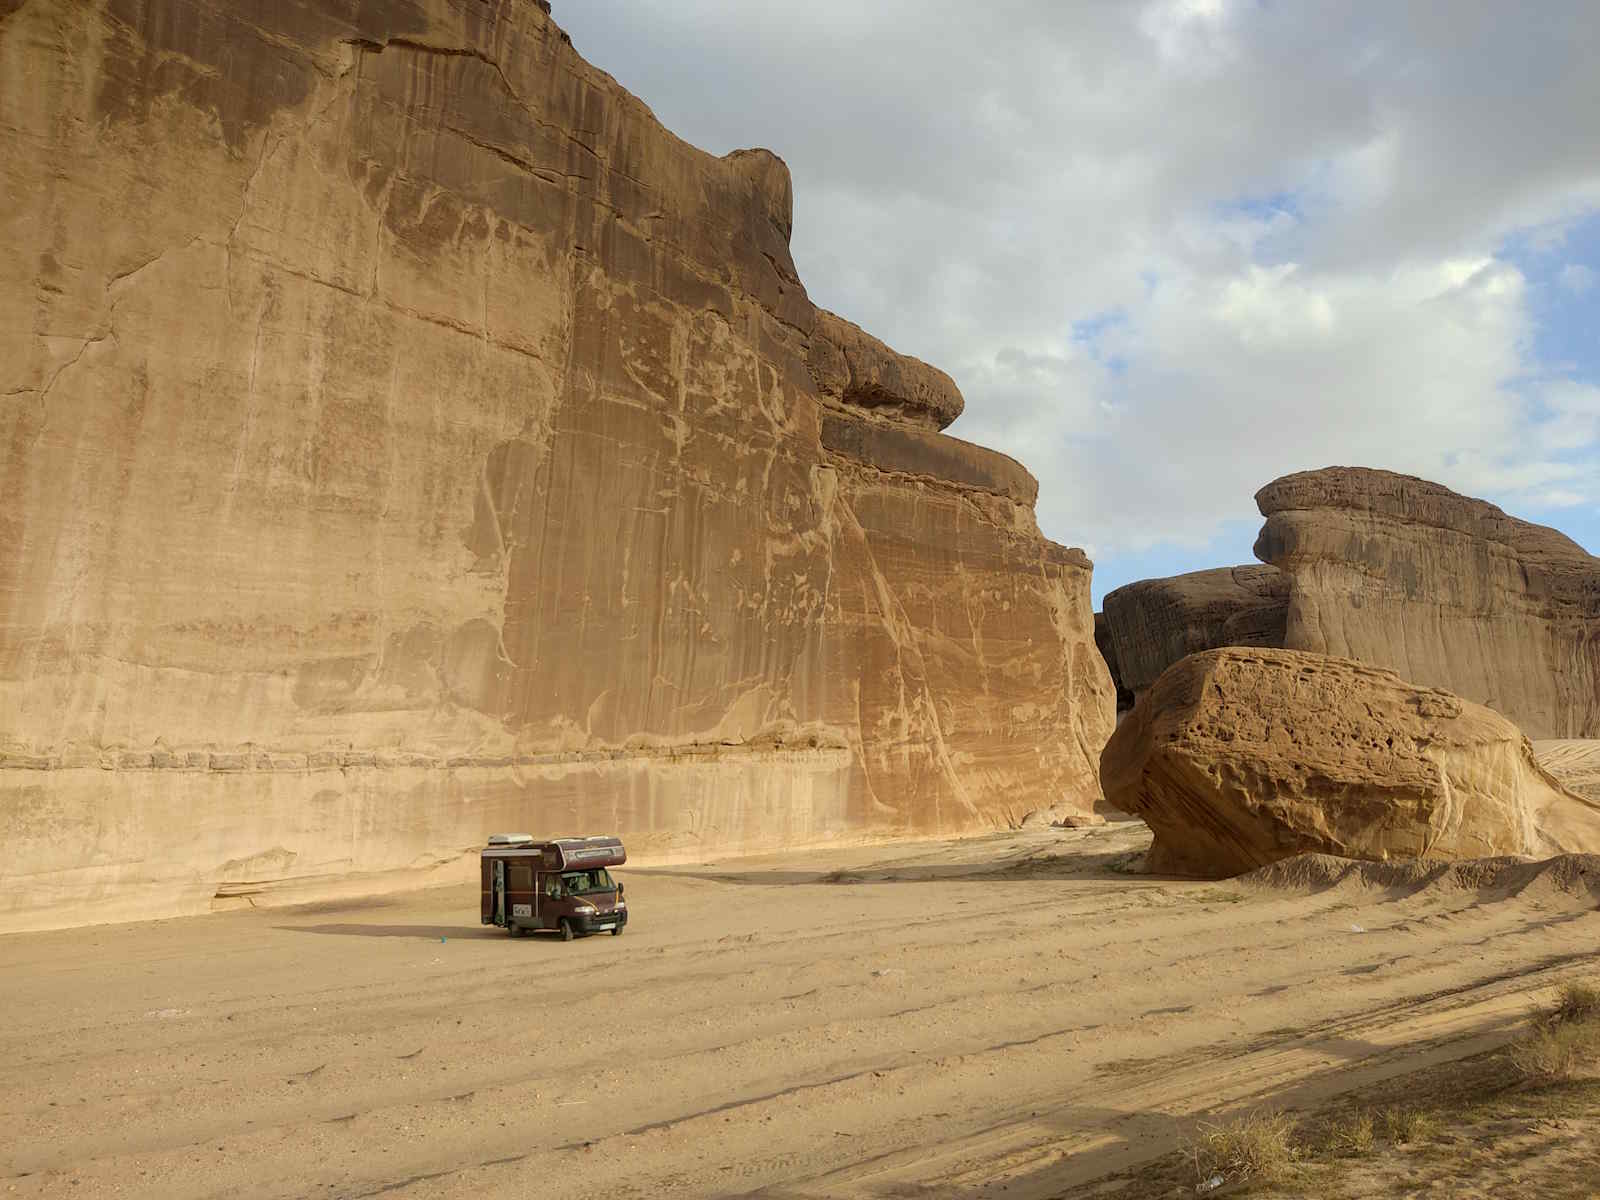 Wohnmobil vor einer Felswand in der Wüste von Saudi-Arabien